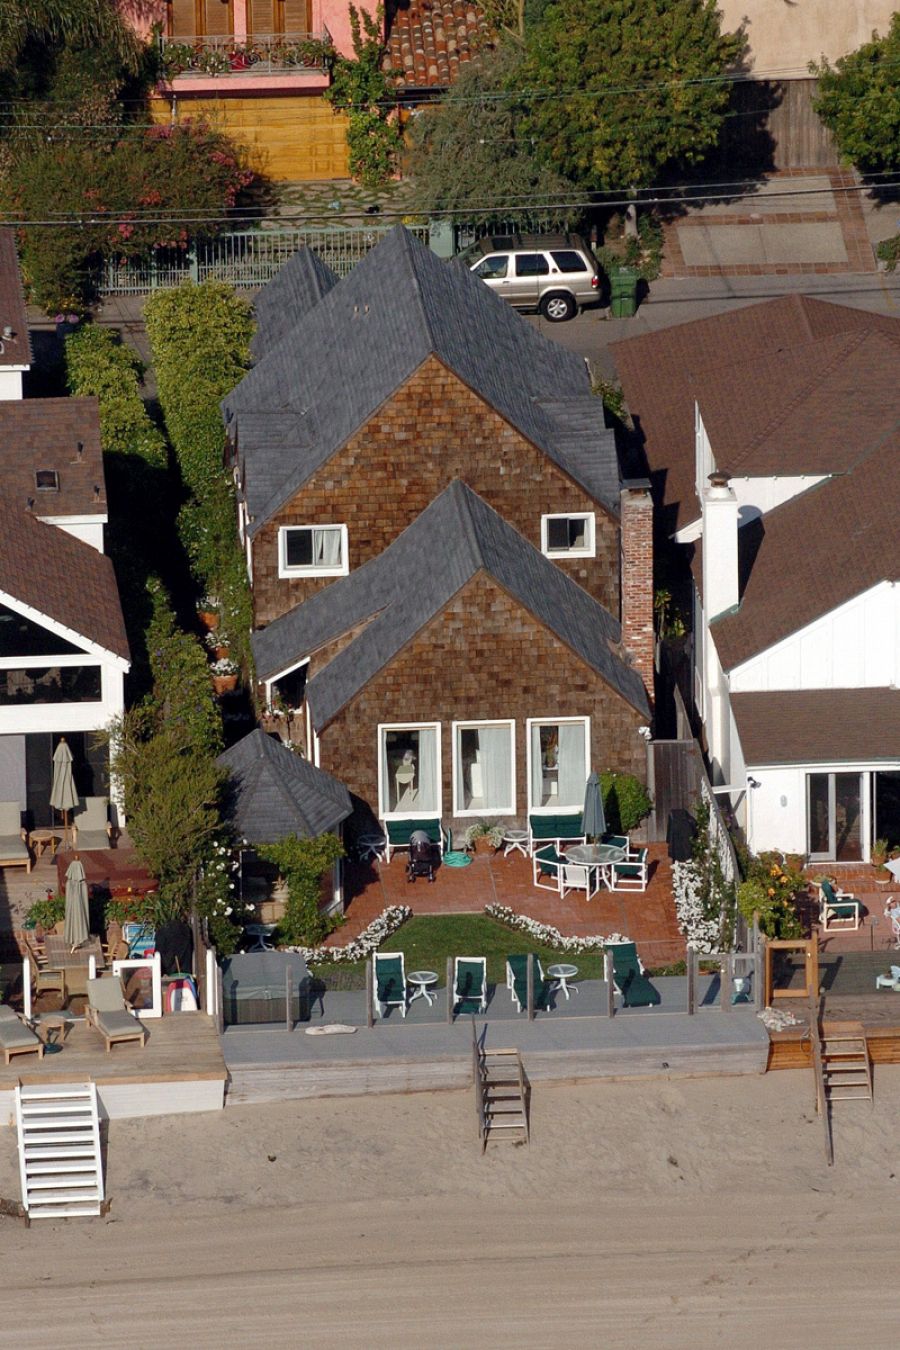 La casa de Malibú de Pamela Anderson y Tommy Leee